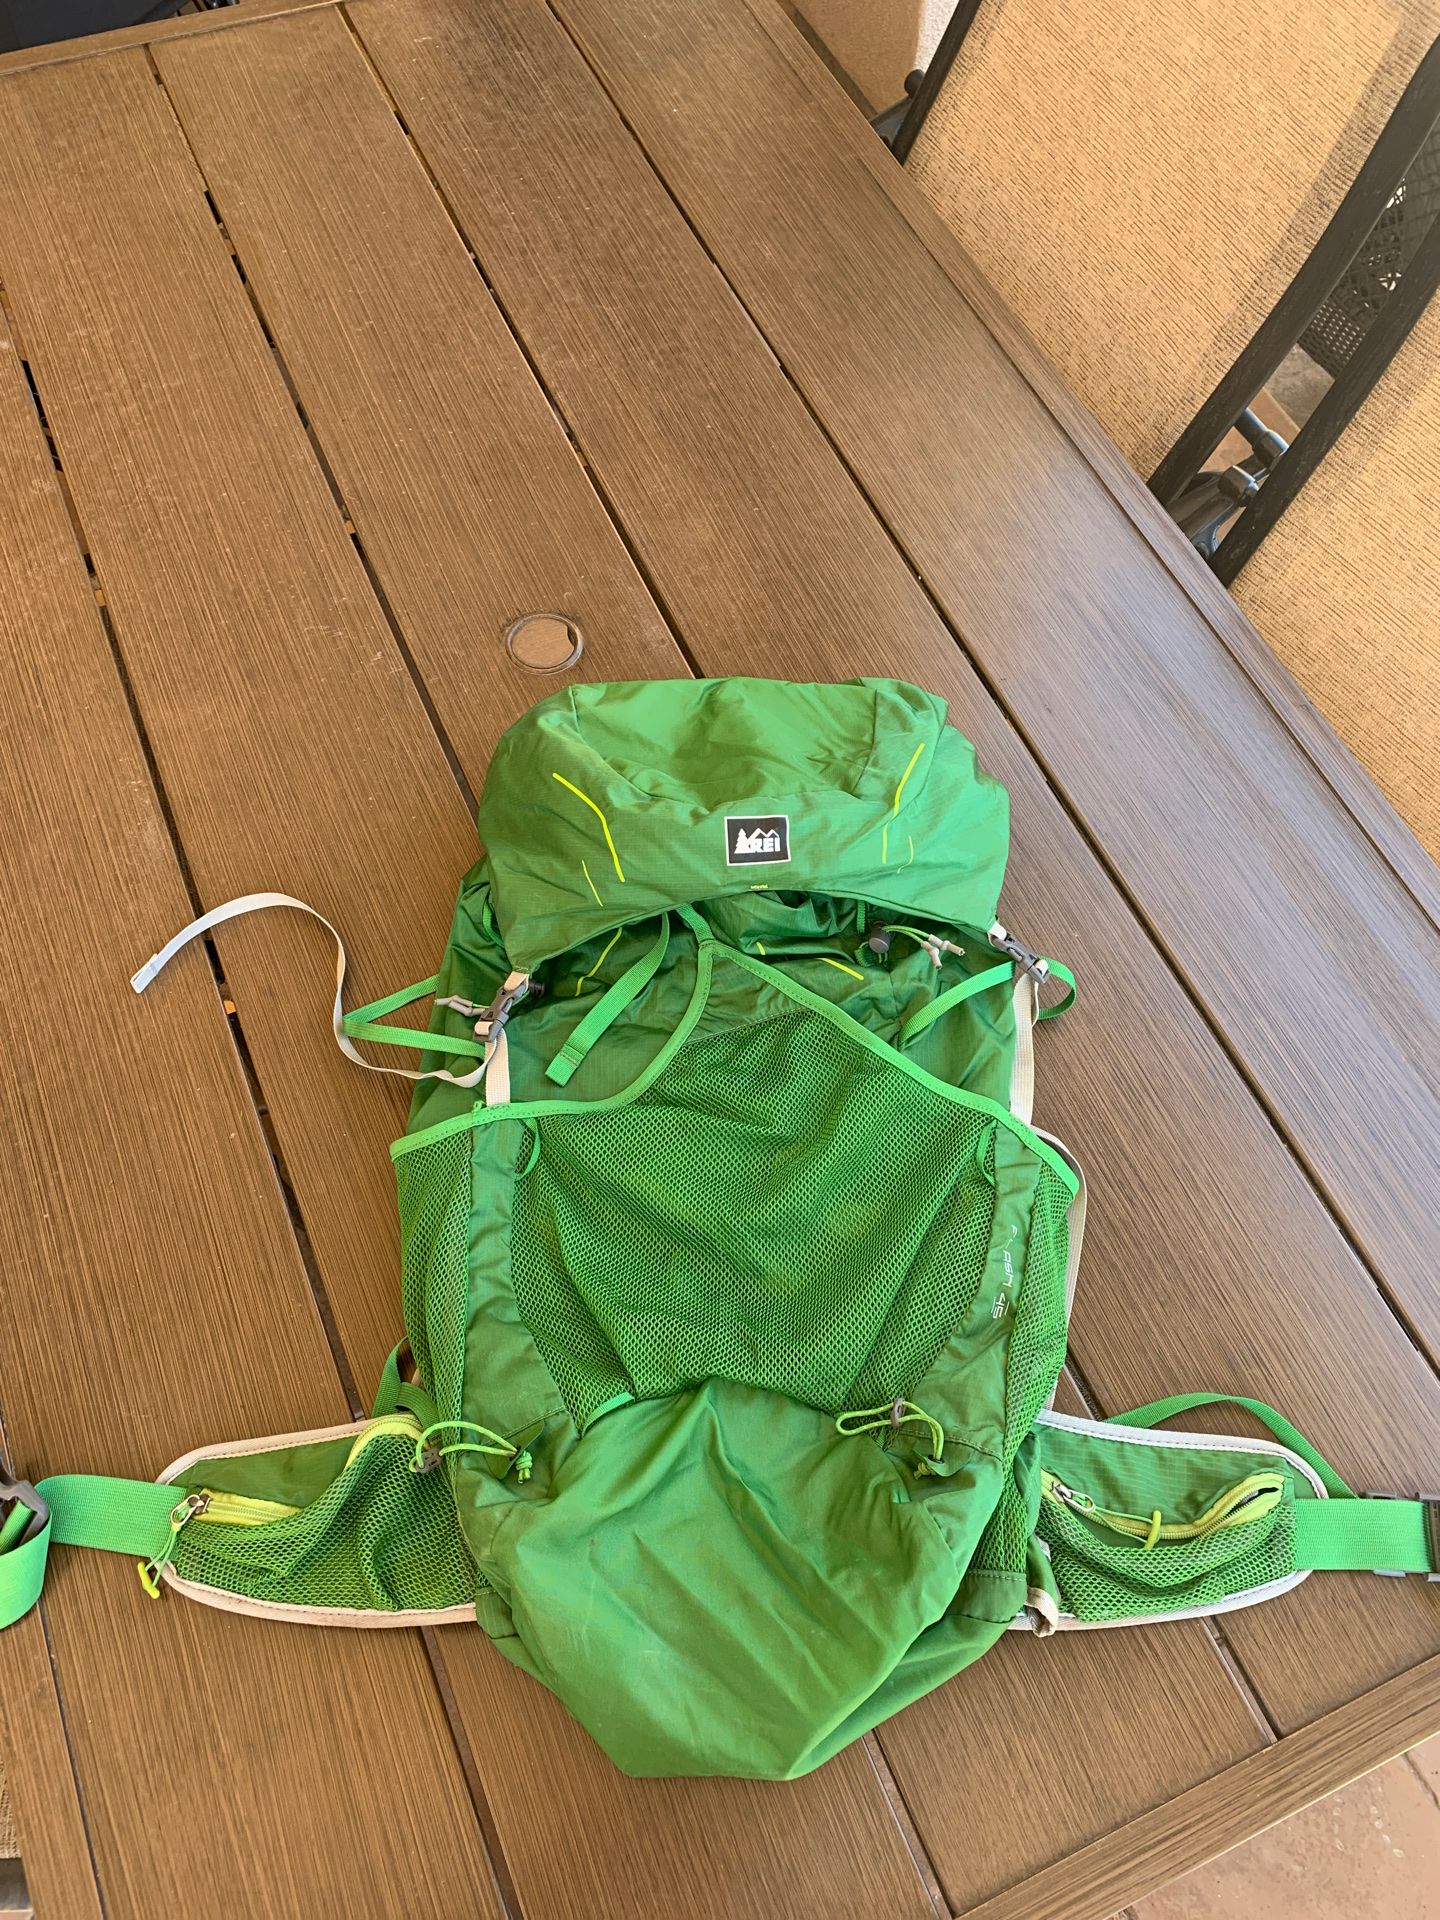 Rei hiking backpack